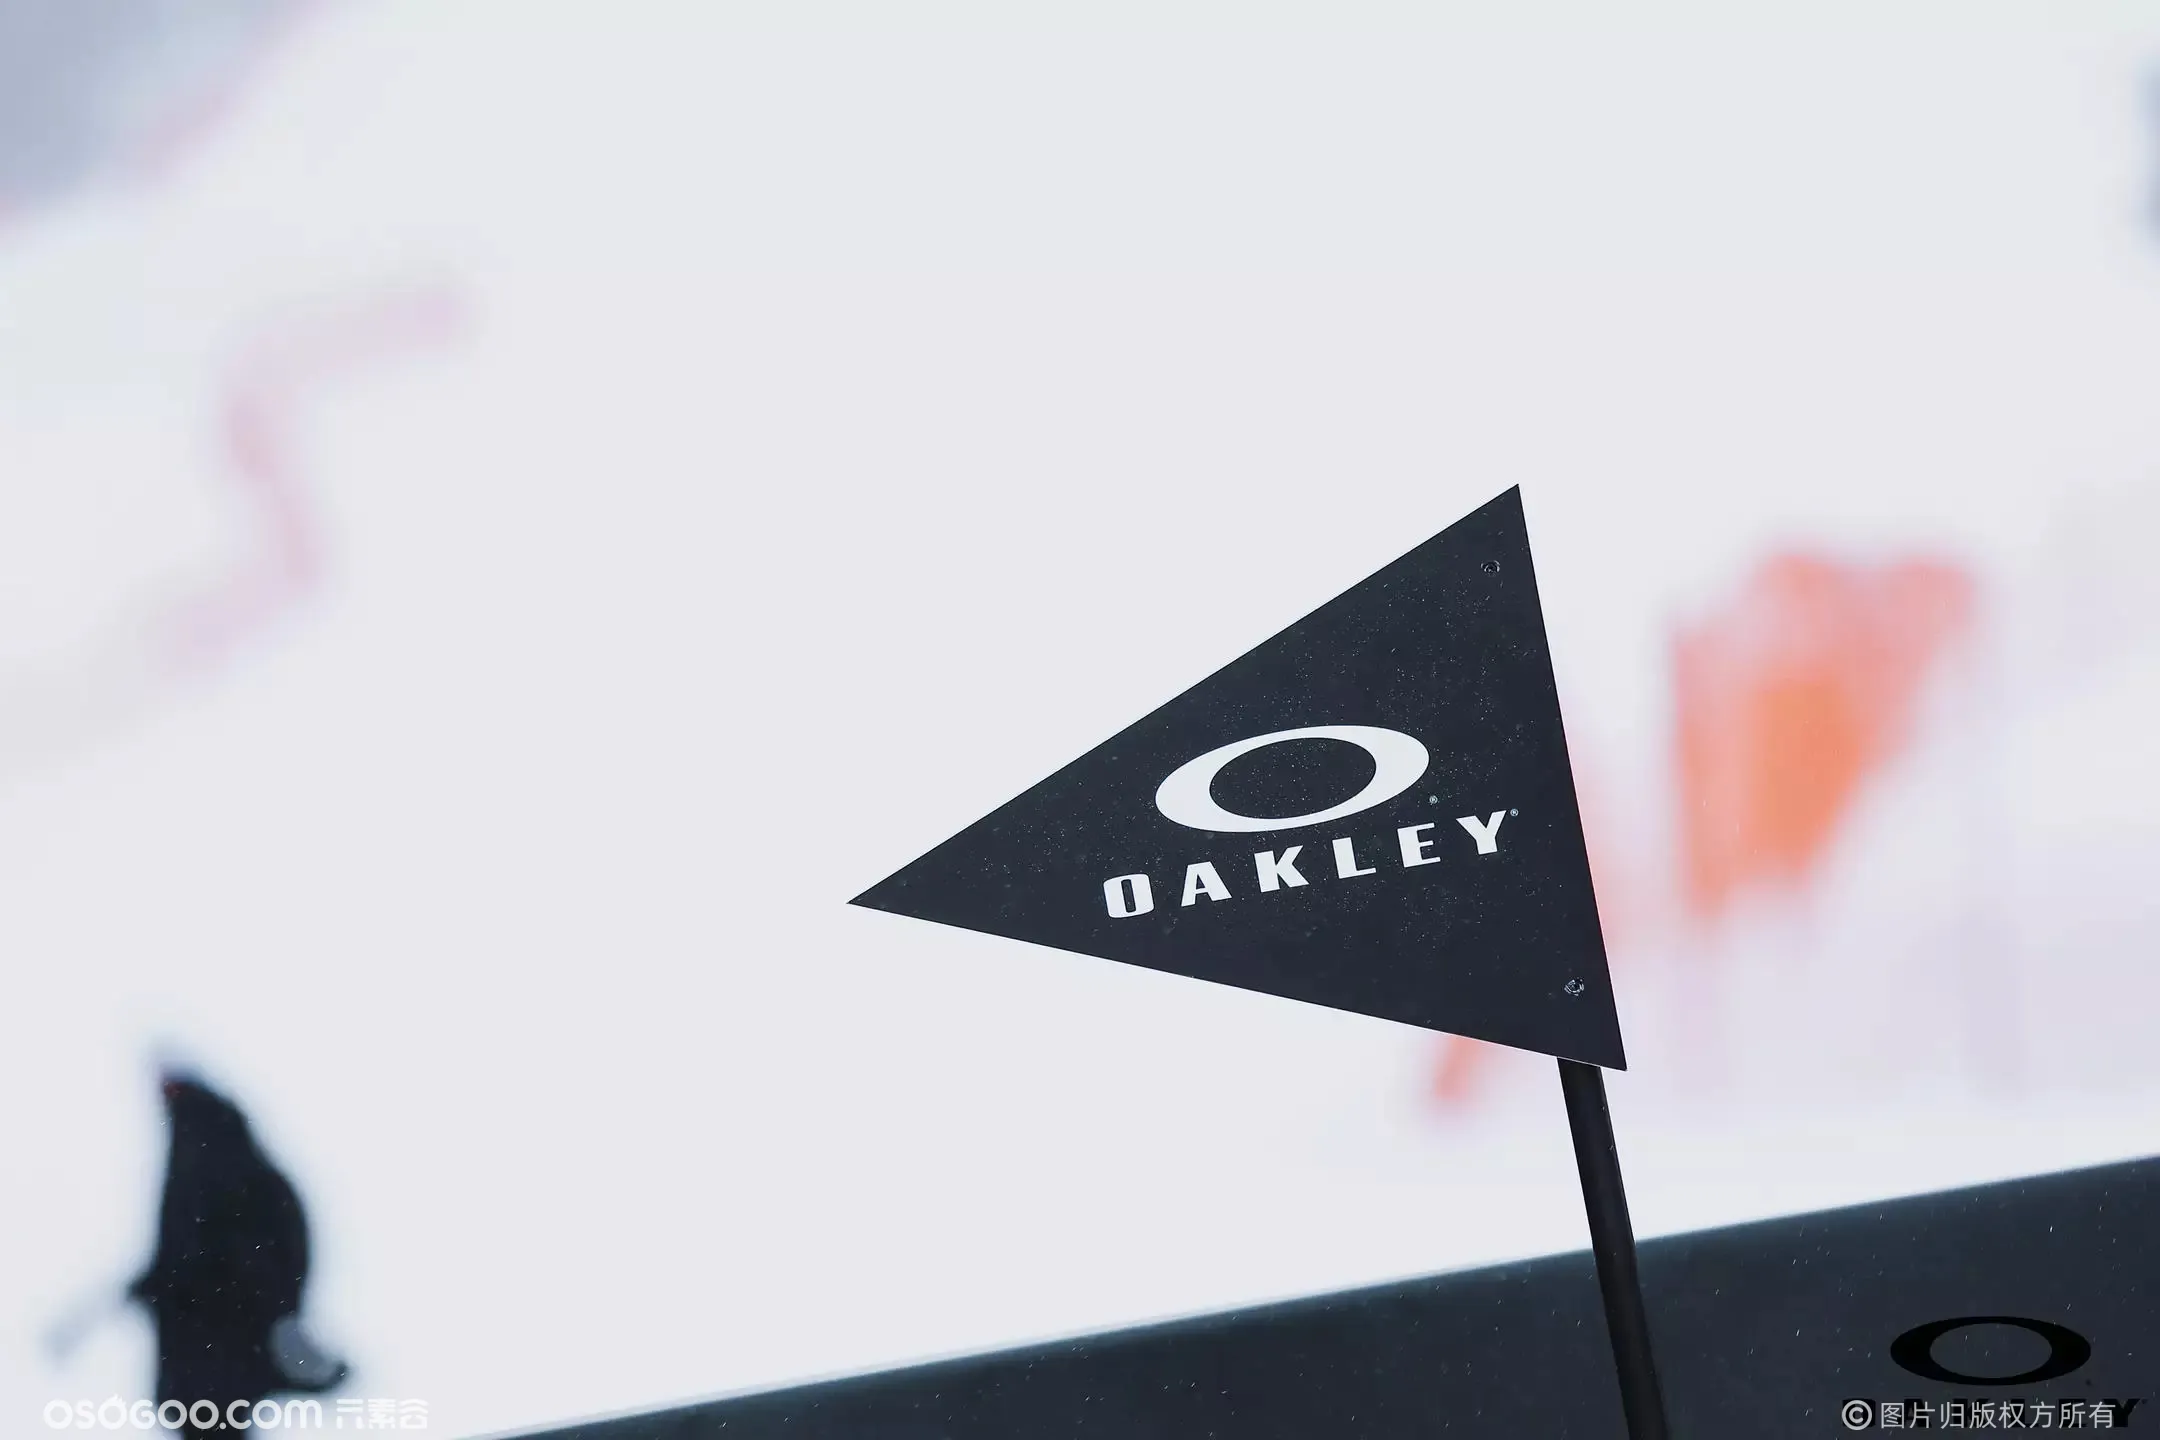 2021 OAKLEY攻占雪山之巅品牌活动暨新品鉴赏会